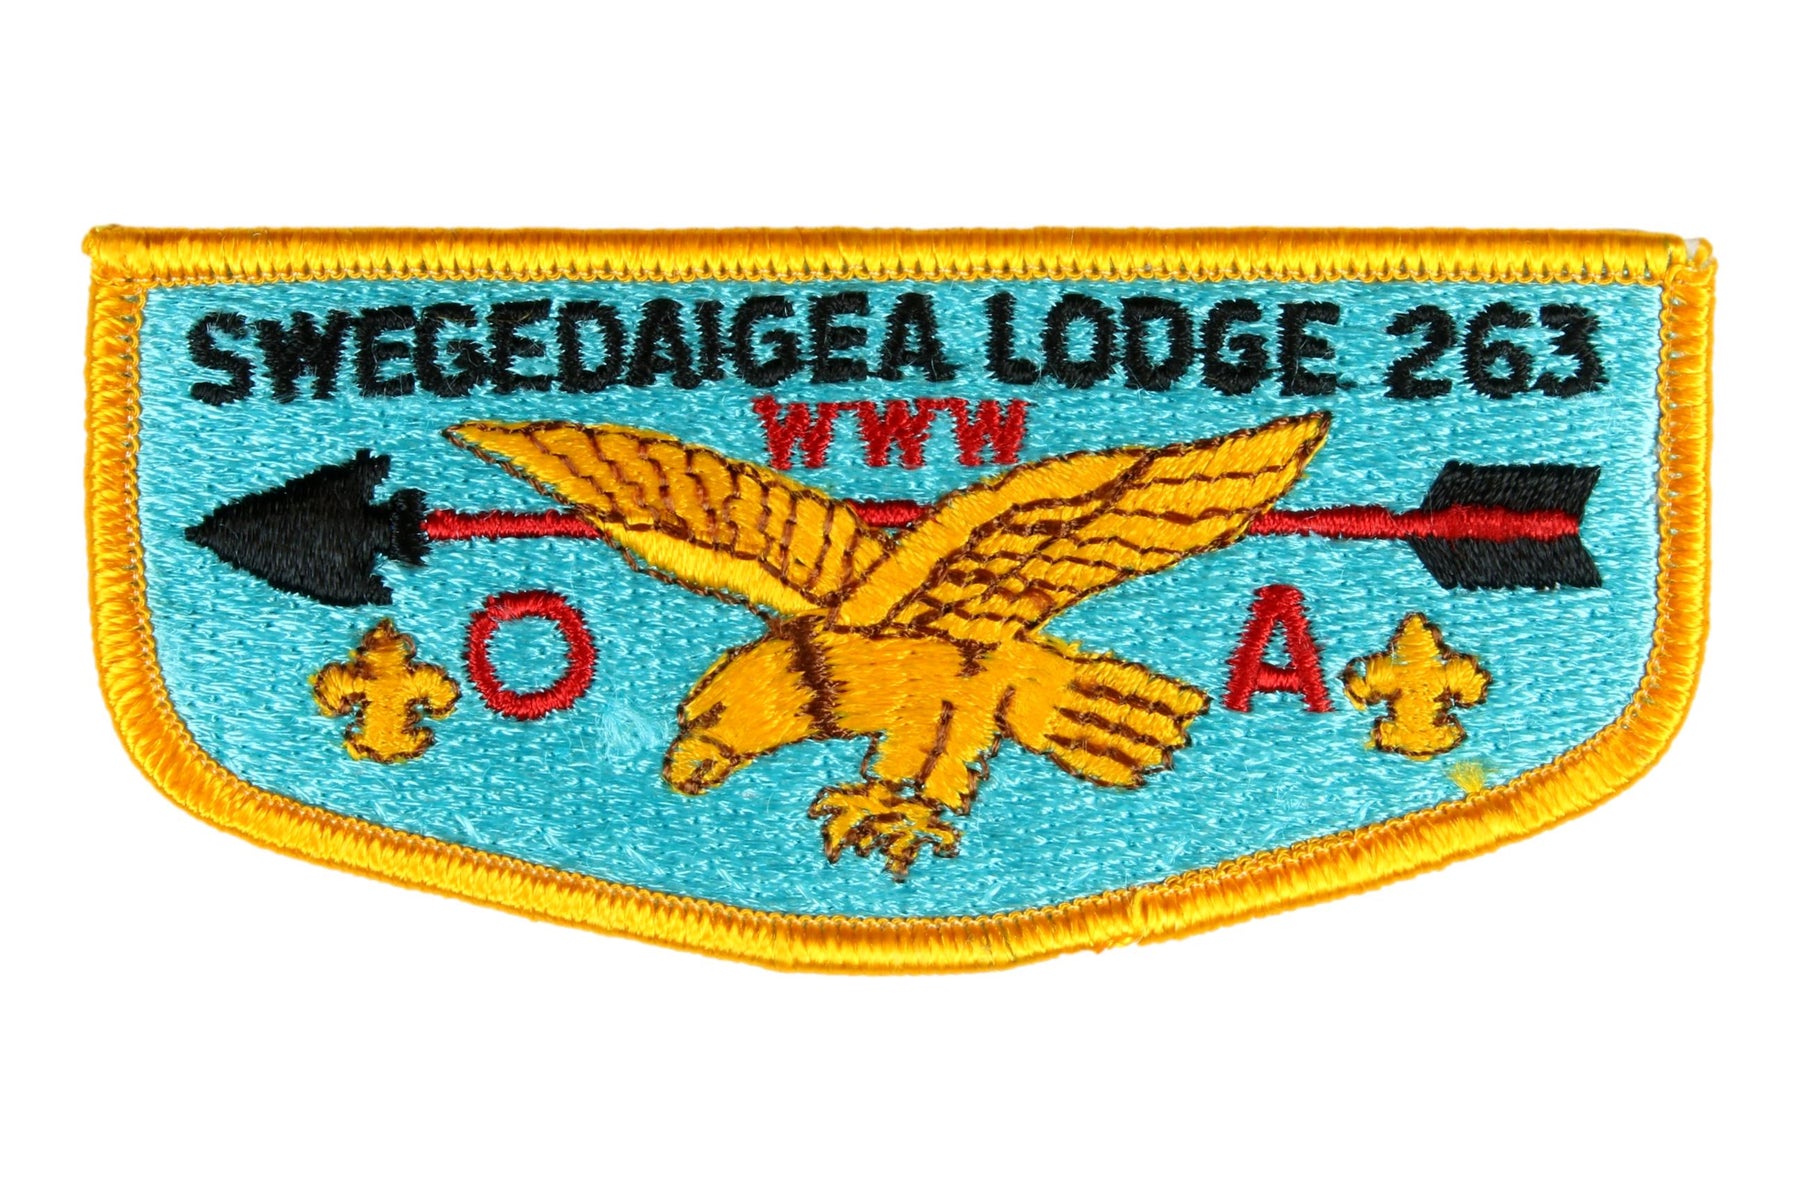 Lodge 263 Swegedaigea Flap S-3